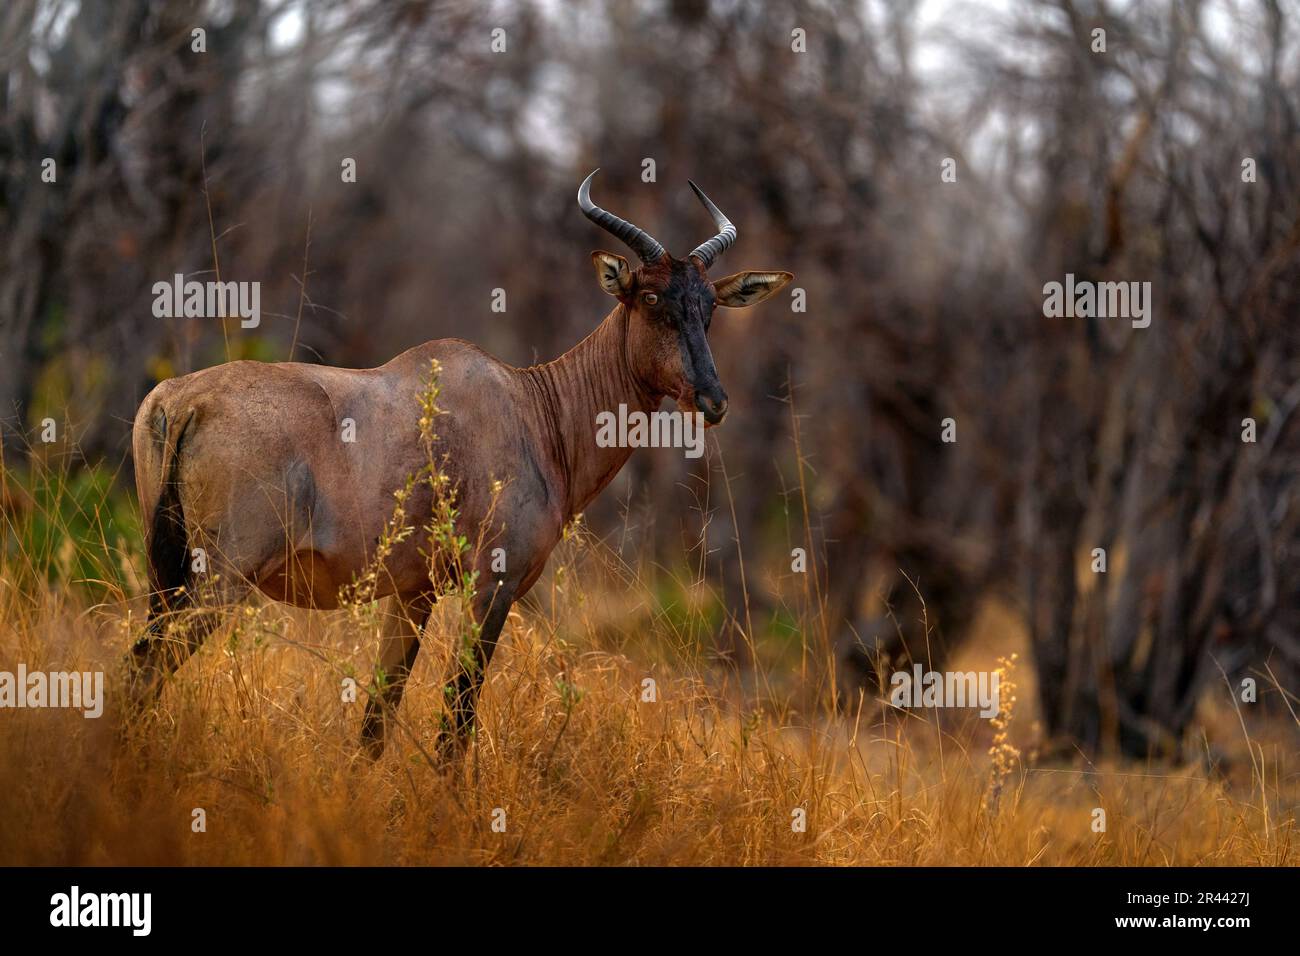 Gewöhnlicher Zessebe, Damaliscus lunatus, Detailporträt eines großen braunen afrikanischen Säugetieres im natürlichen Lebensraum. Sassaby, in grüner Vegetation, Okavango Delta, Bots Stockfoto